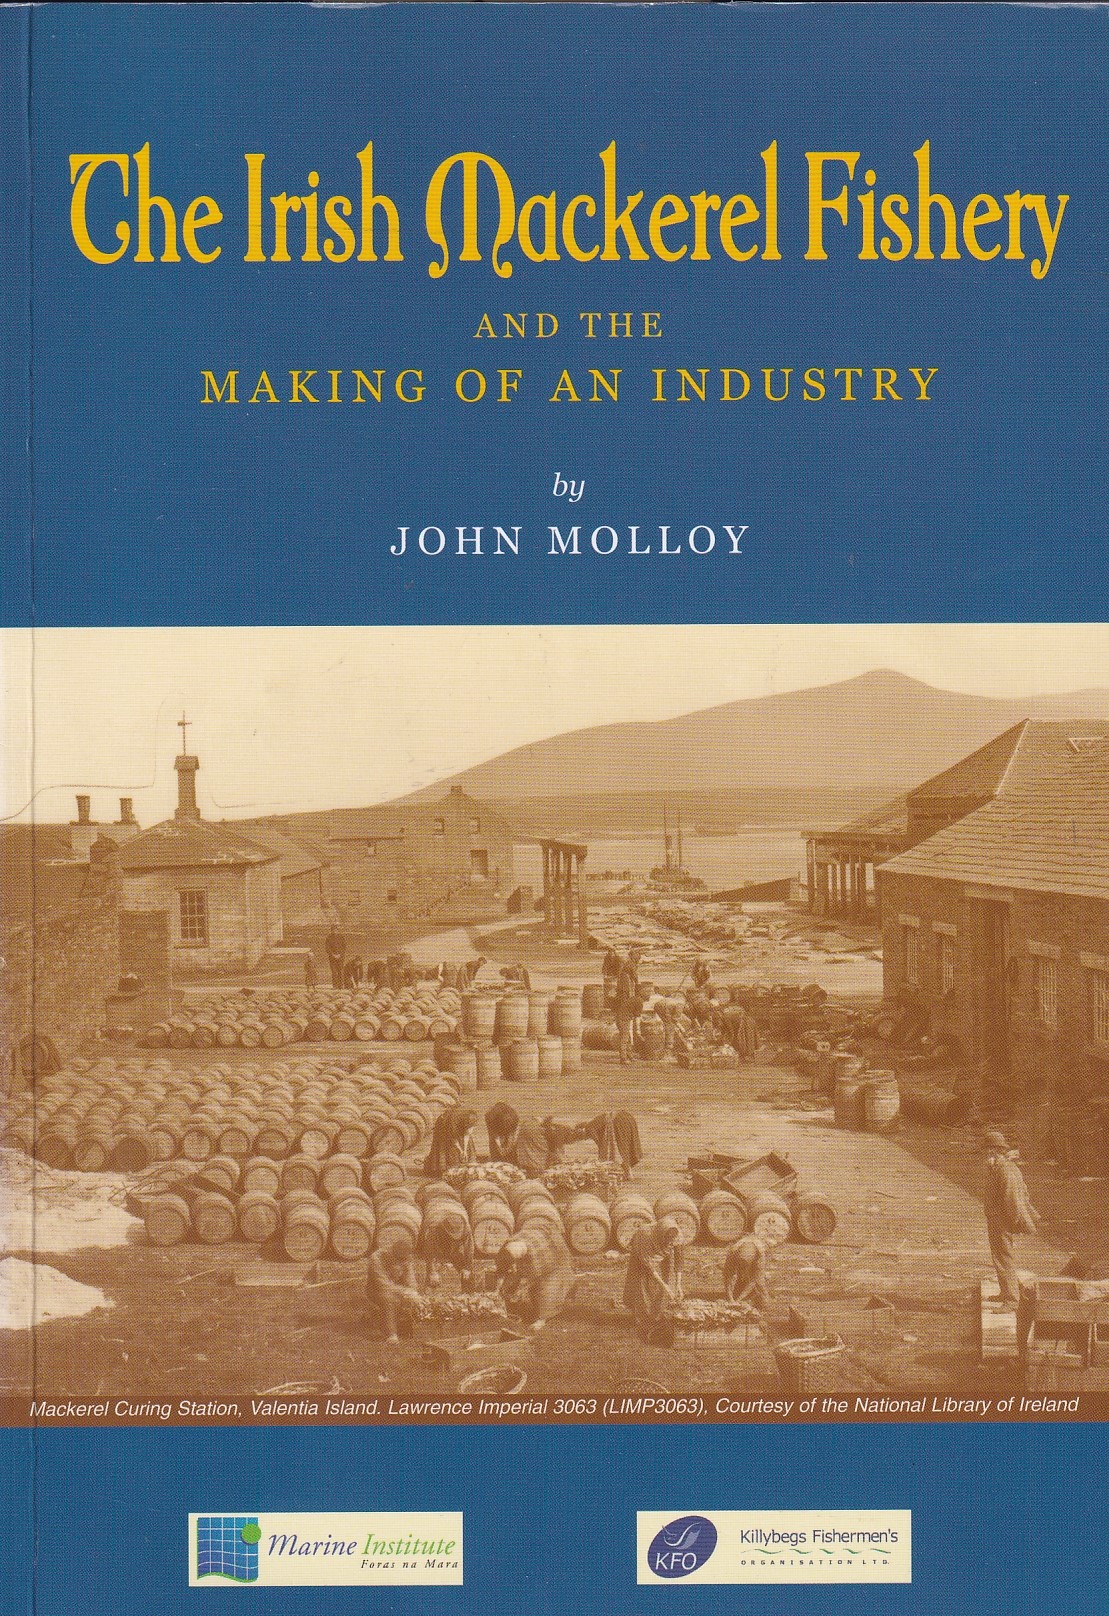 The Irish Mackerel Fishery (Signed) by John Molloy